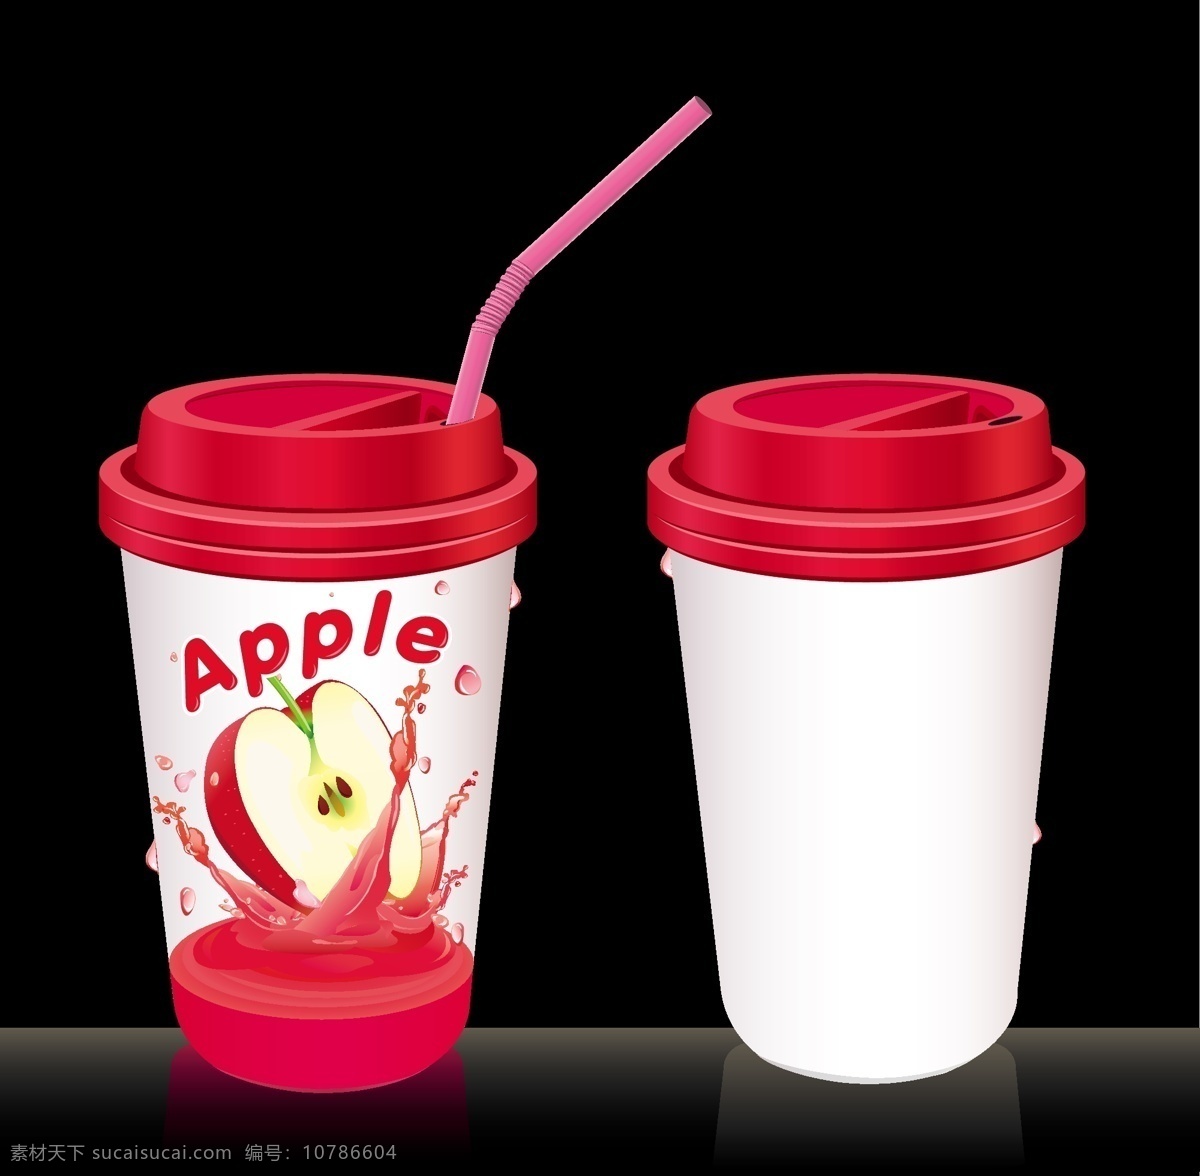 包装设计 果汁包装 苹果 苹果矢量素材 苹果图片 塑料杯 矢量 模板下载 果汁包裝 西瓜模板下载 包裝 果汁天然水果